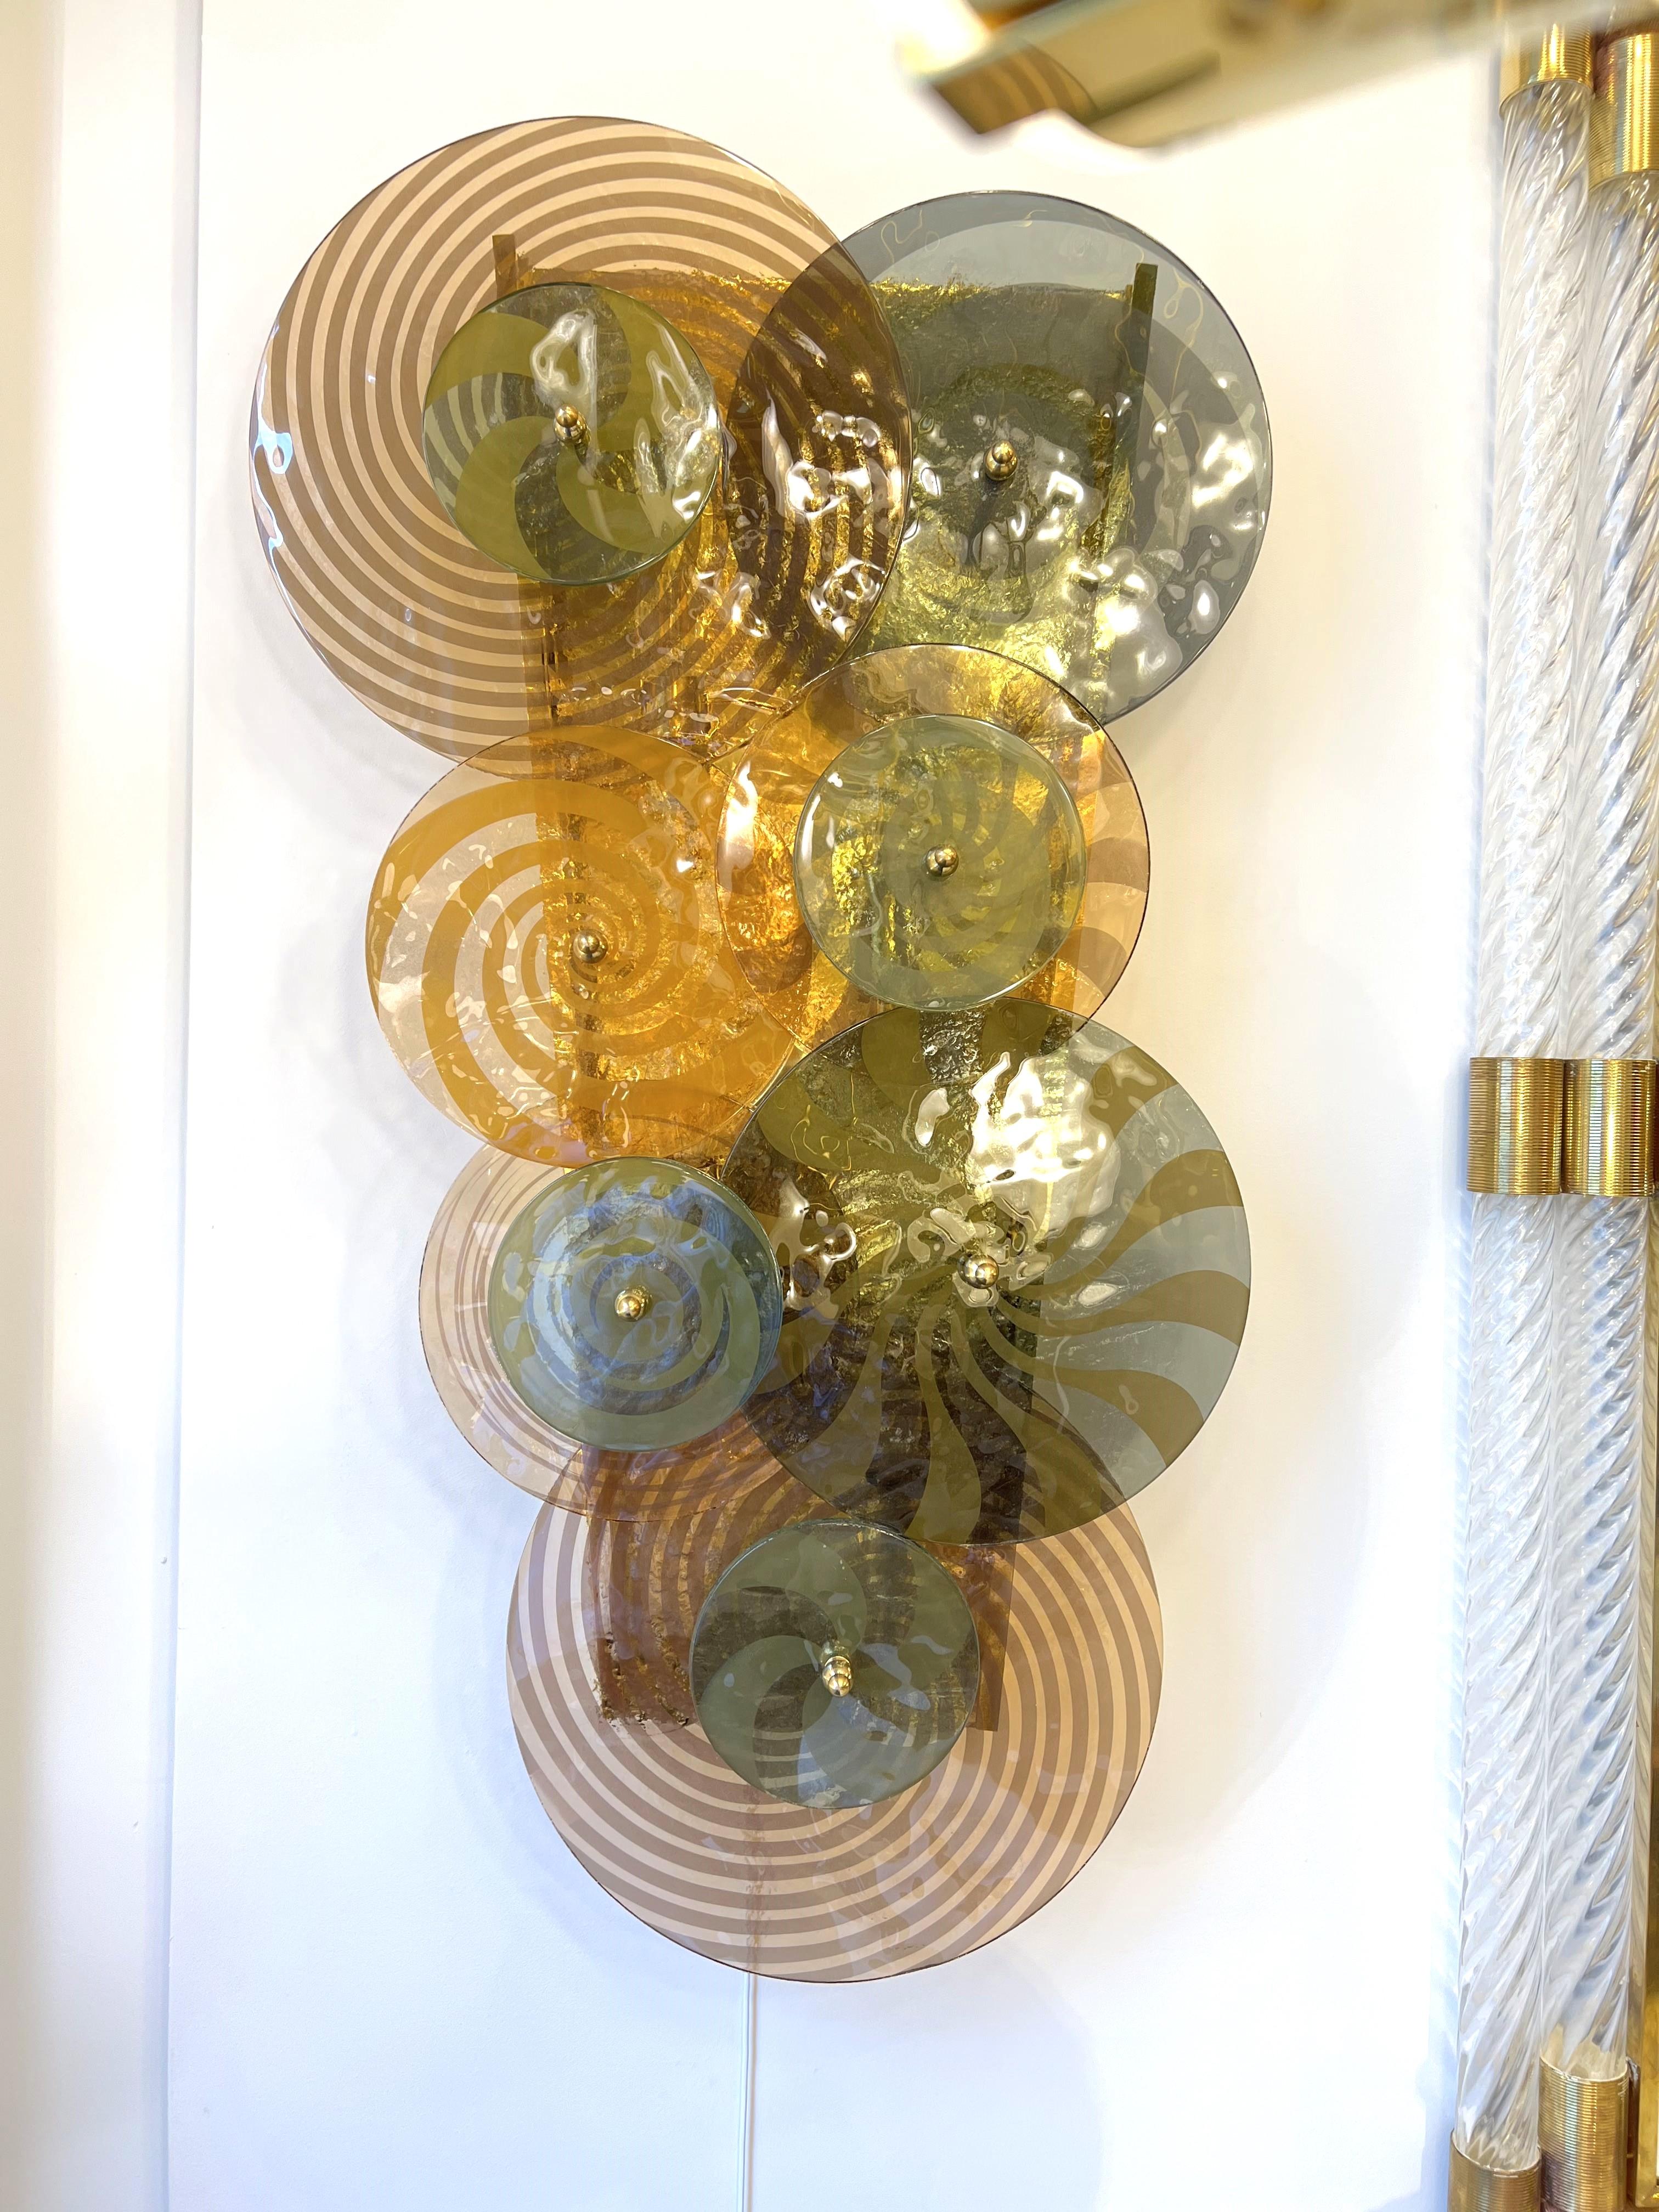 Seltenes und einzigartiges Paar von Muranoglas-Spiralscheiben und Messing-Wandleuchter. Handgegossene und gefärbte Muranoglasscheiben in verschiedenen Durchmessern und Farben Handgegossene Muranoglasscheiben, sowohl spiralförmig als auch geriffelt,